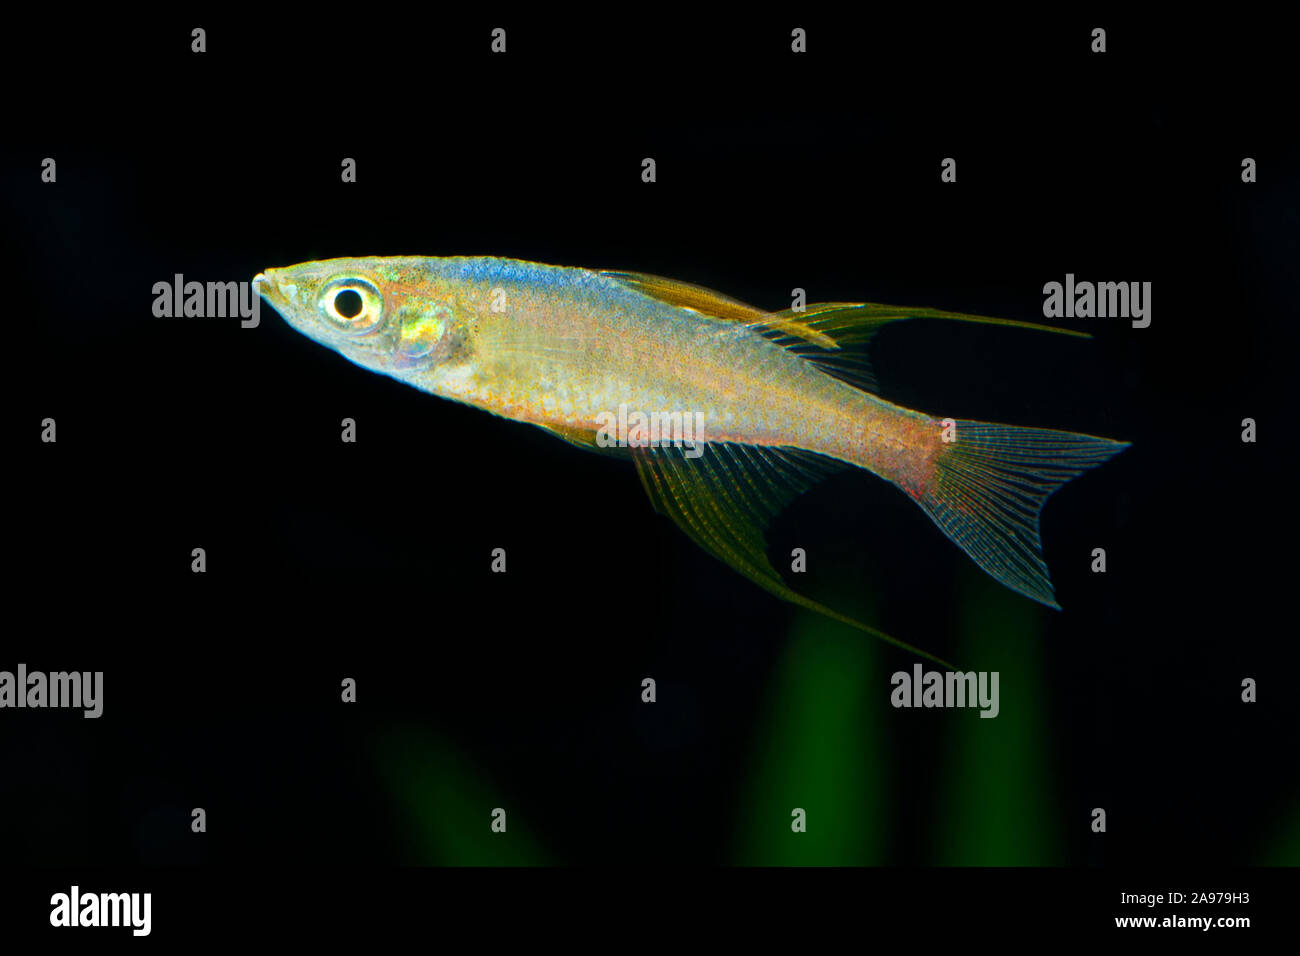 Iriatherina werneri,Schmetterlingsregenbogenfisch,Featherfin Rainbowfish Stock Photo